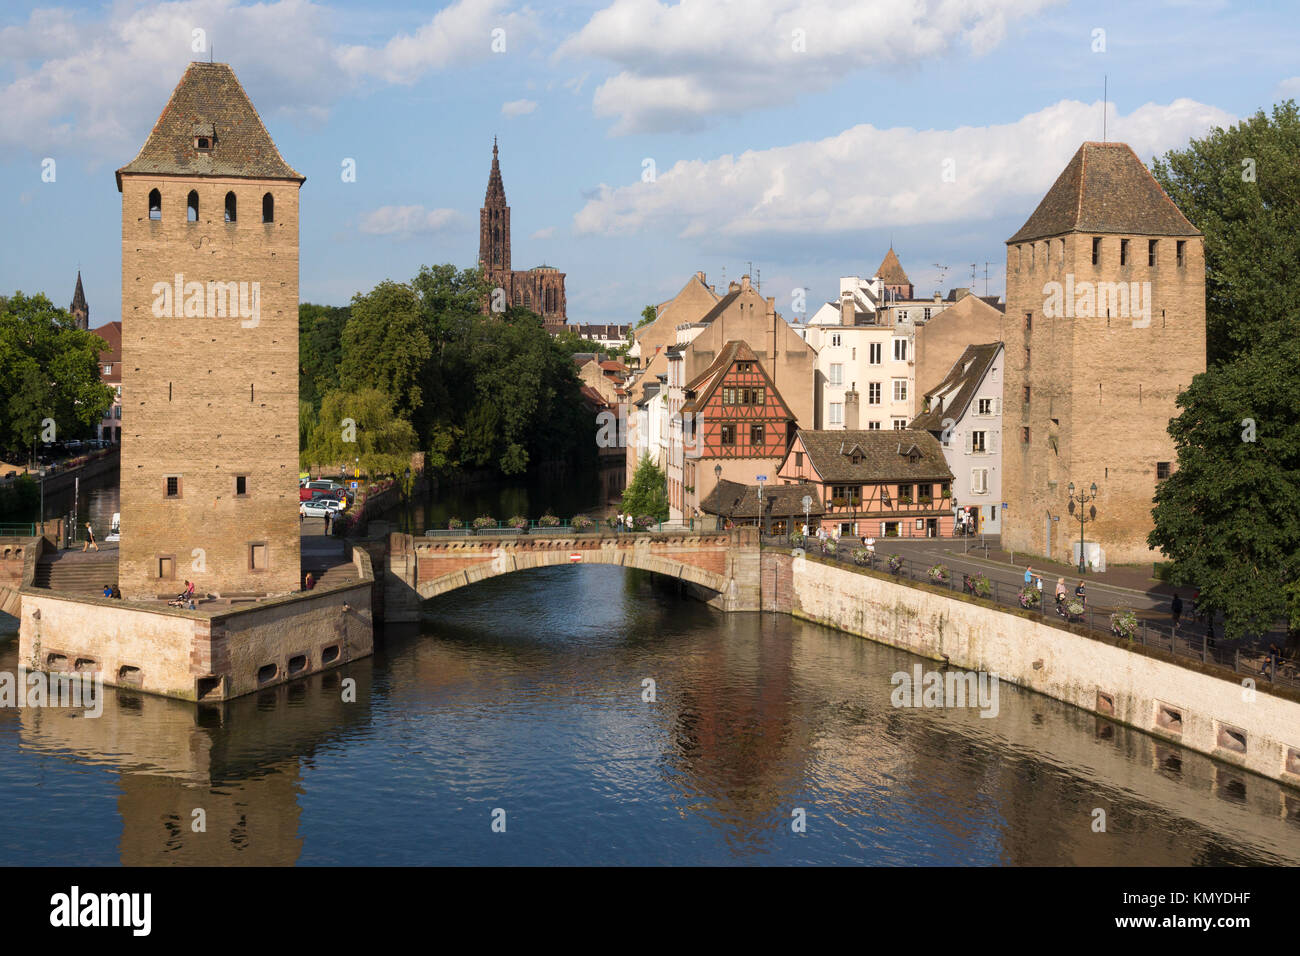 Los Ponts Couverts encerrar el borde occidental del barrio Petite France de Estrasburgo. La catedral de Estrasburgo puede verse en el fondo Foto de stock